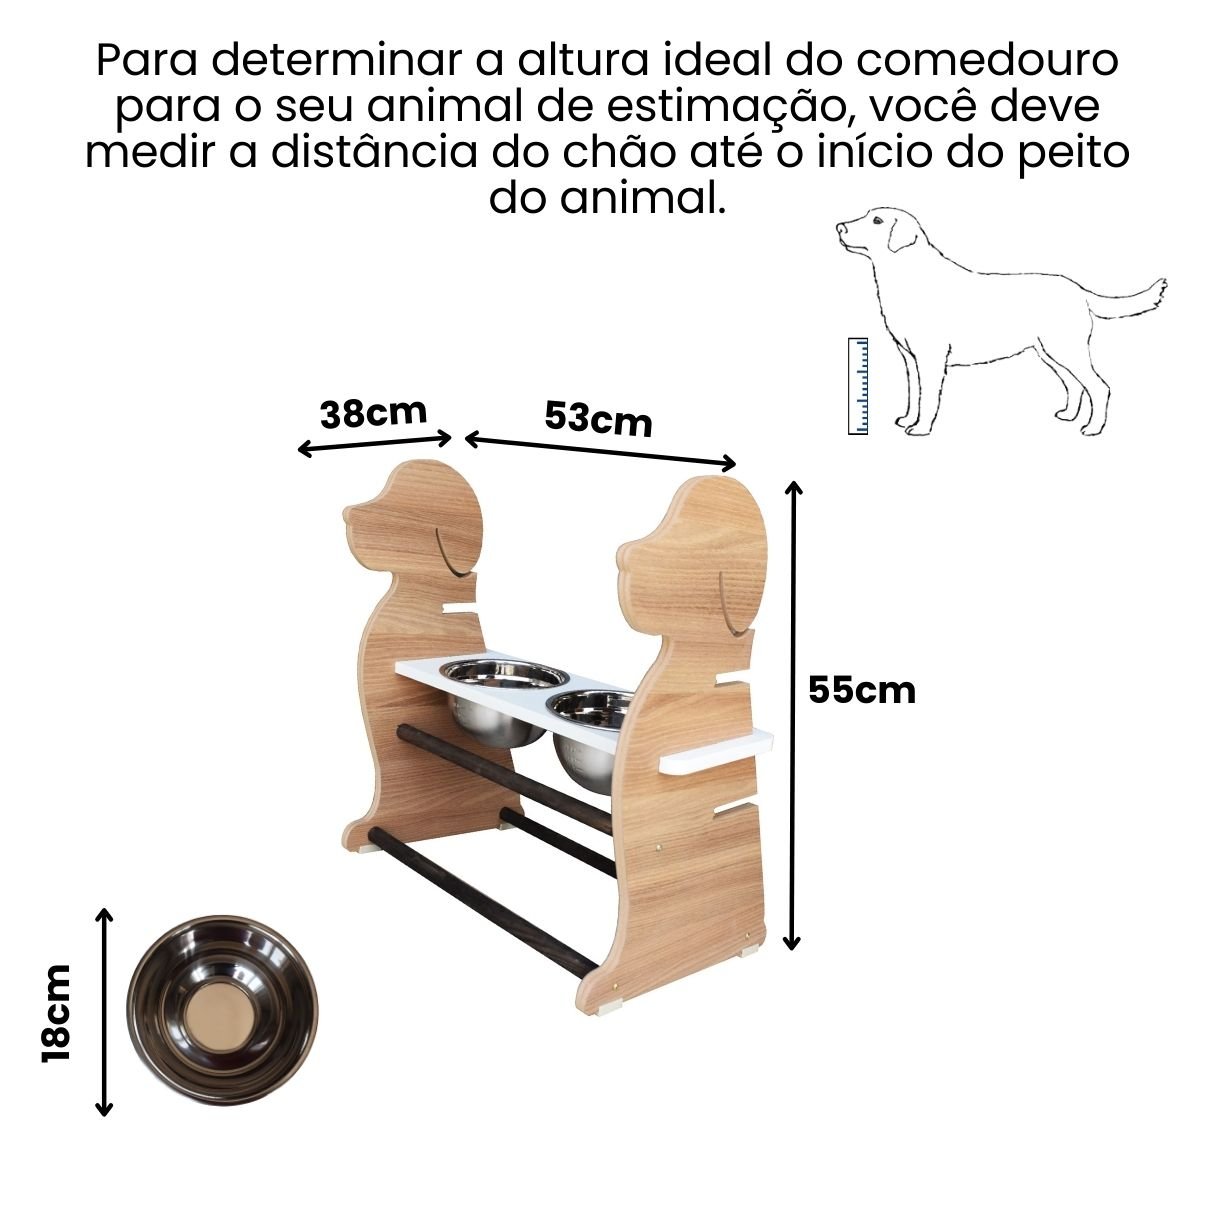 Comedouro Elevado Duplo Cachorro Porte Grande Pet Mdf Regulagem Altura Amadeirado - 2